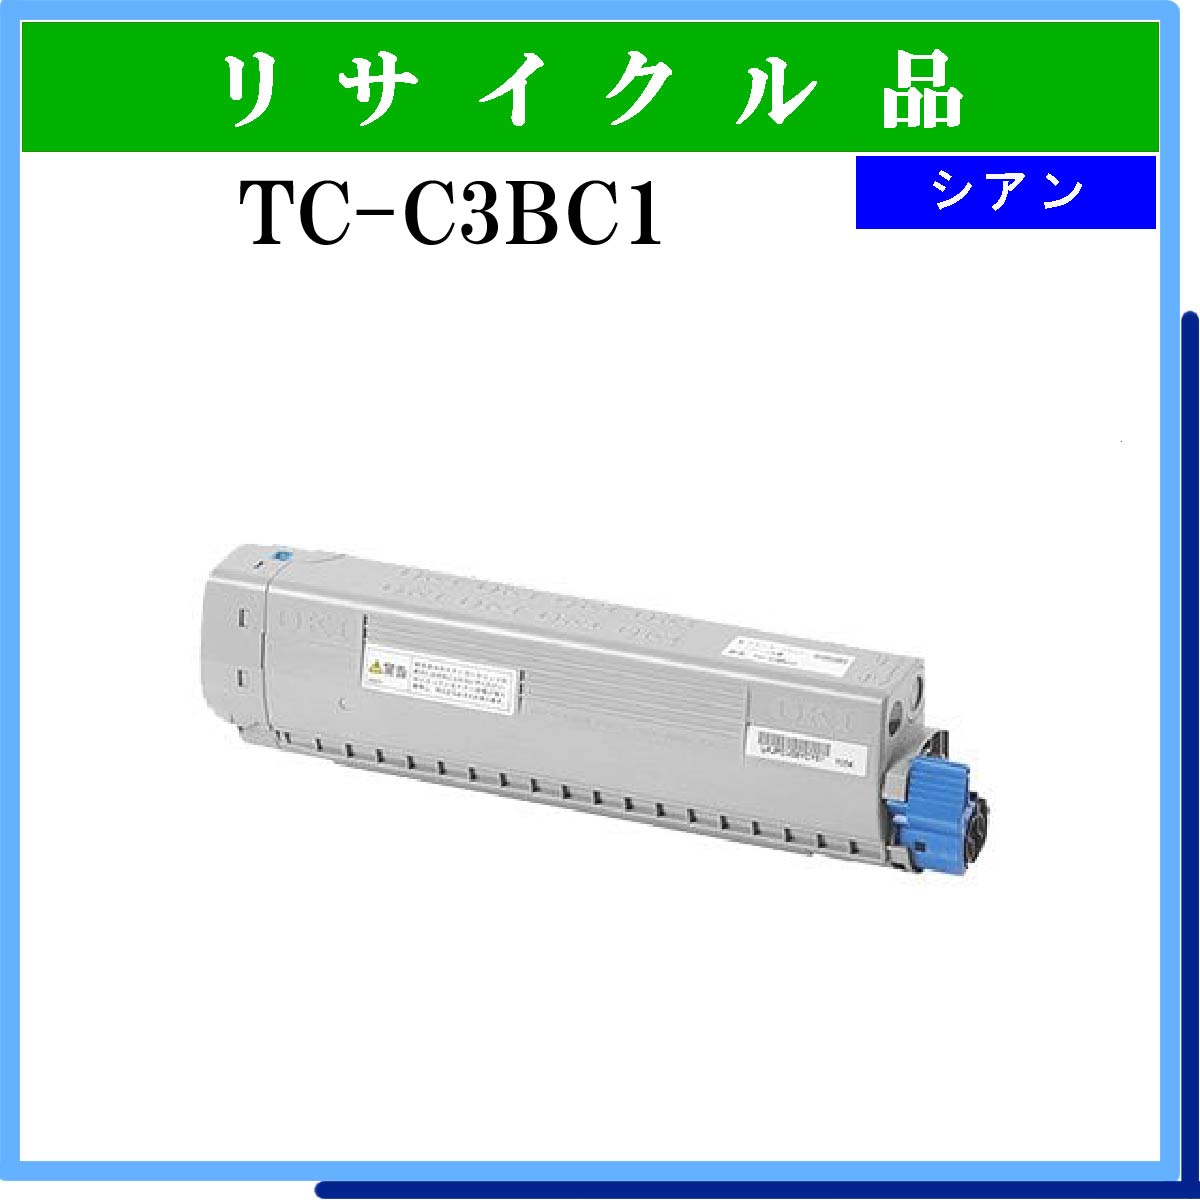 TC-C3BC1